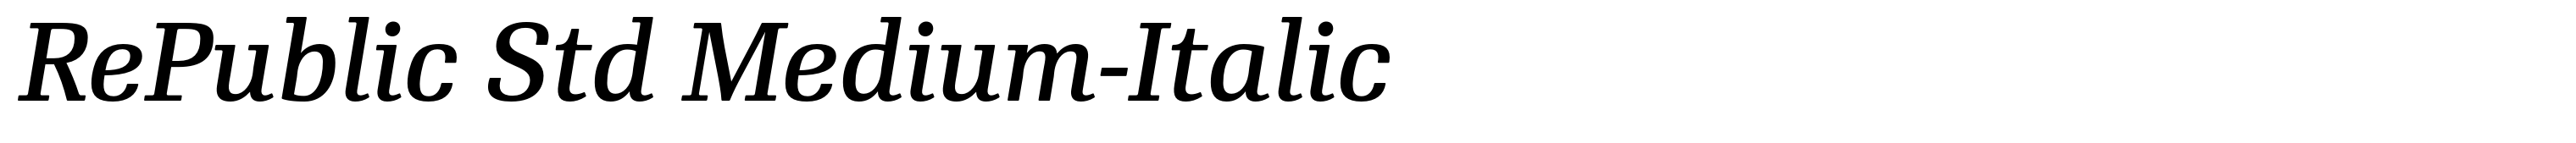 RePublic Std Medium-Italic